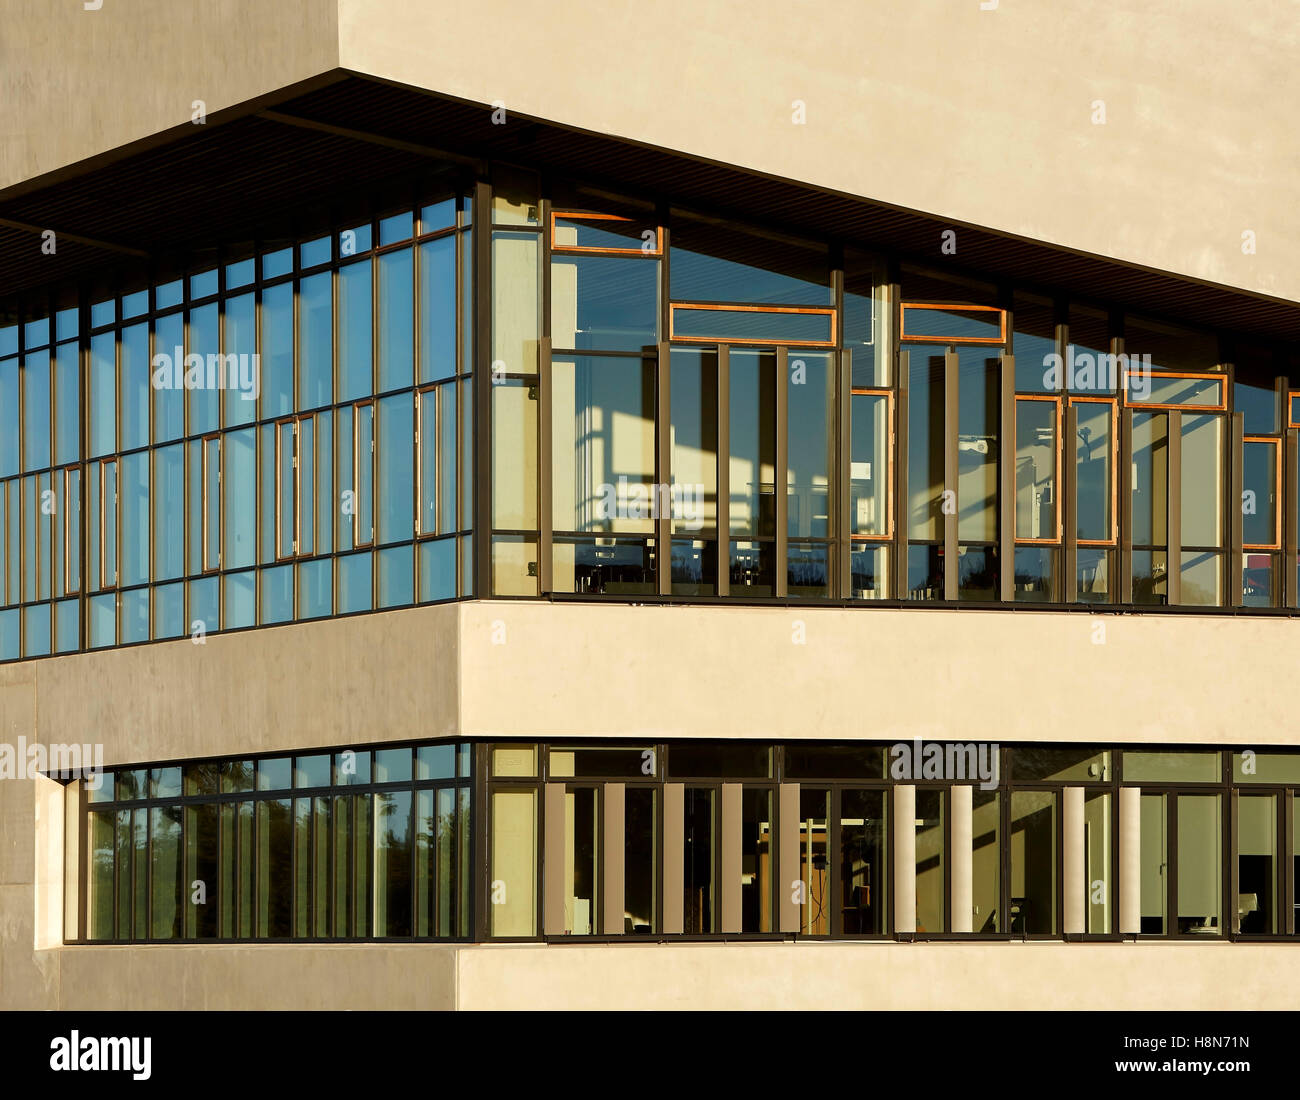 Détail de béton et de vitrage. Musée Moesgaard, Aarhus, Danemark. Architecte : Henning Larsen, 2015. Banque D'Images